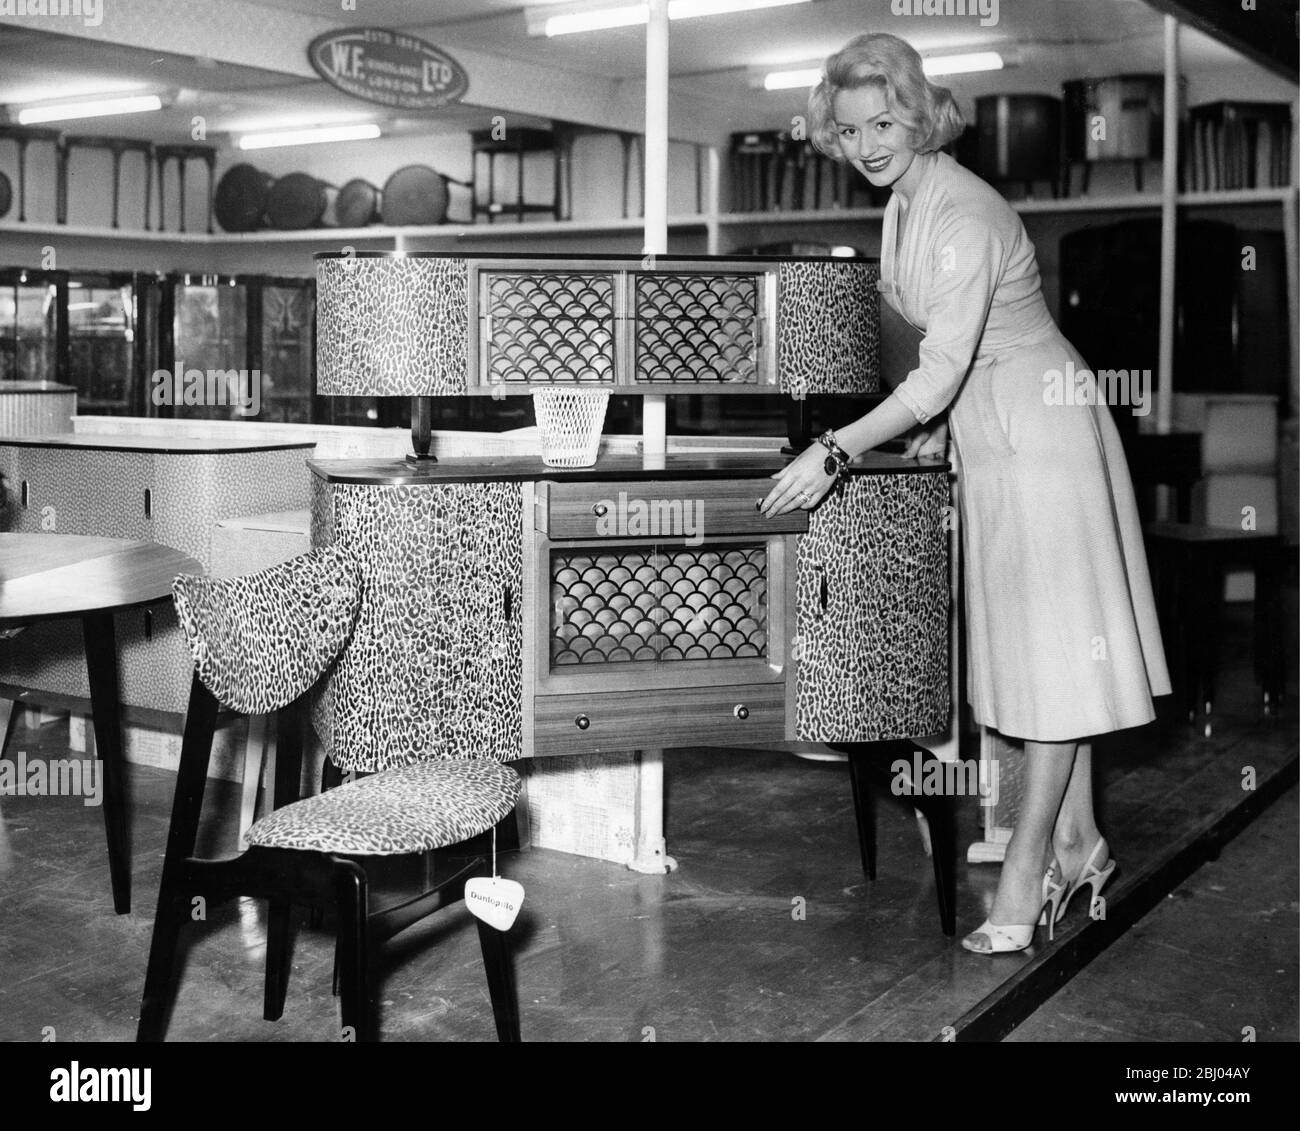 L'exposition de meubles à Earls court. Starlet Sheree Winton avec un nouveau design dans le mobilier. La suite en noyer est couverte de peau de léopard. Janvier 1959 Banque D'Images